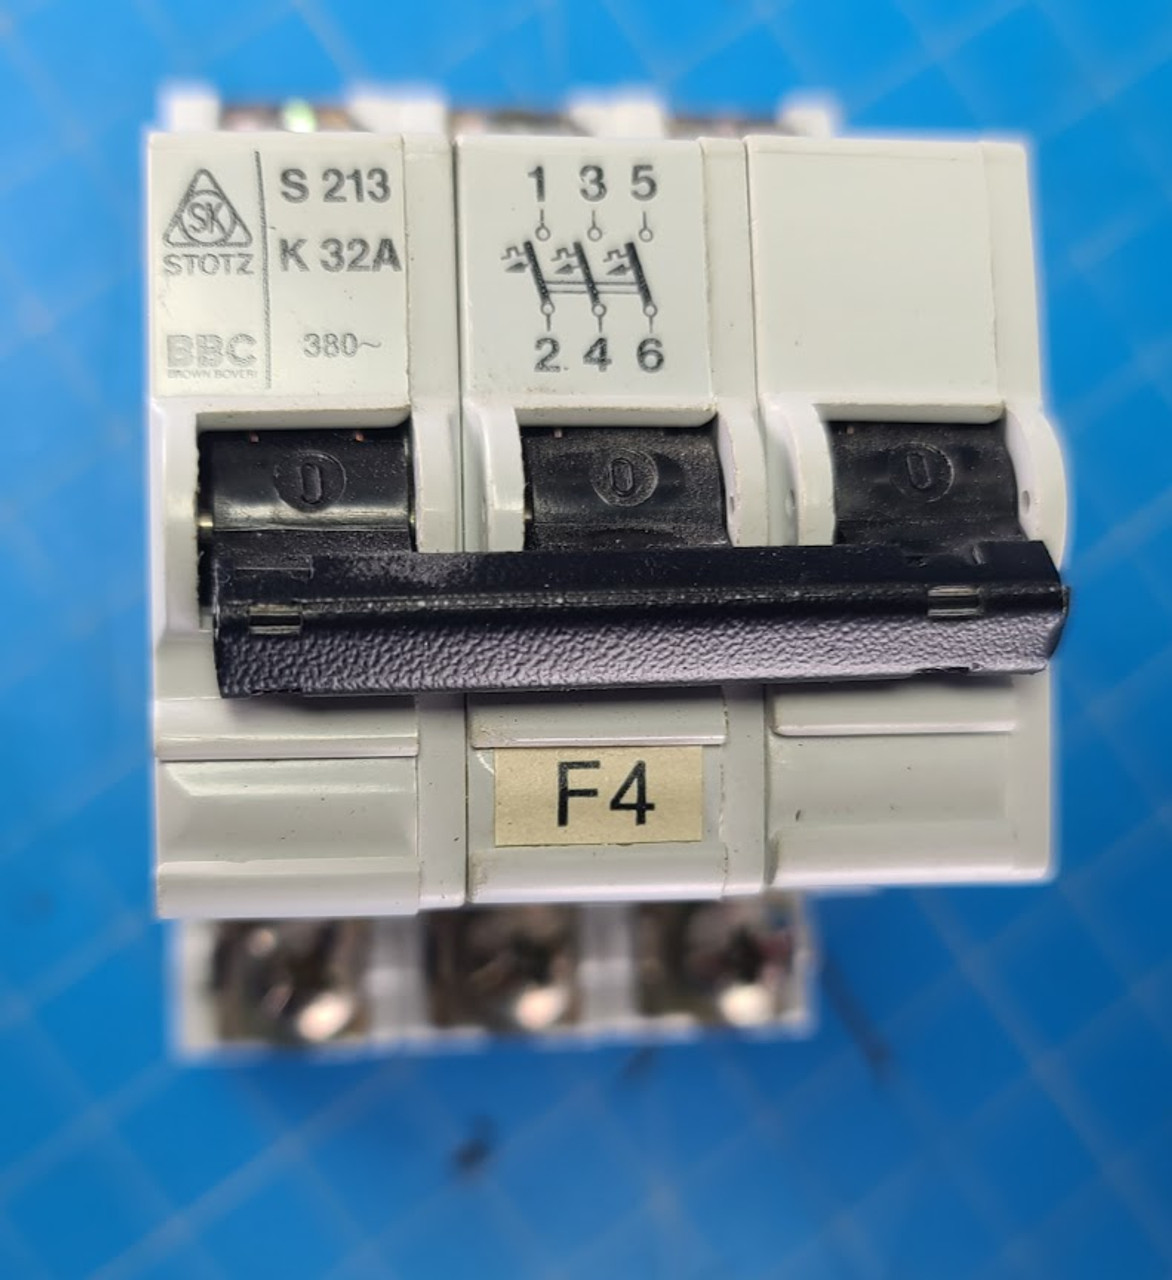 Stahl Folder Stotz 32A 380V 10KA Circuit Breaker S213K32